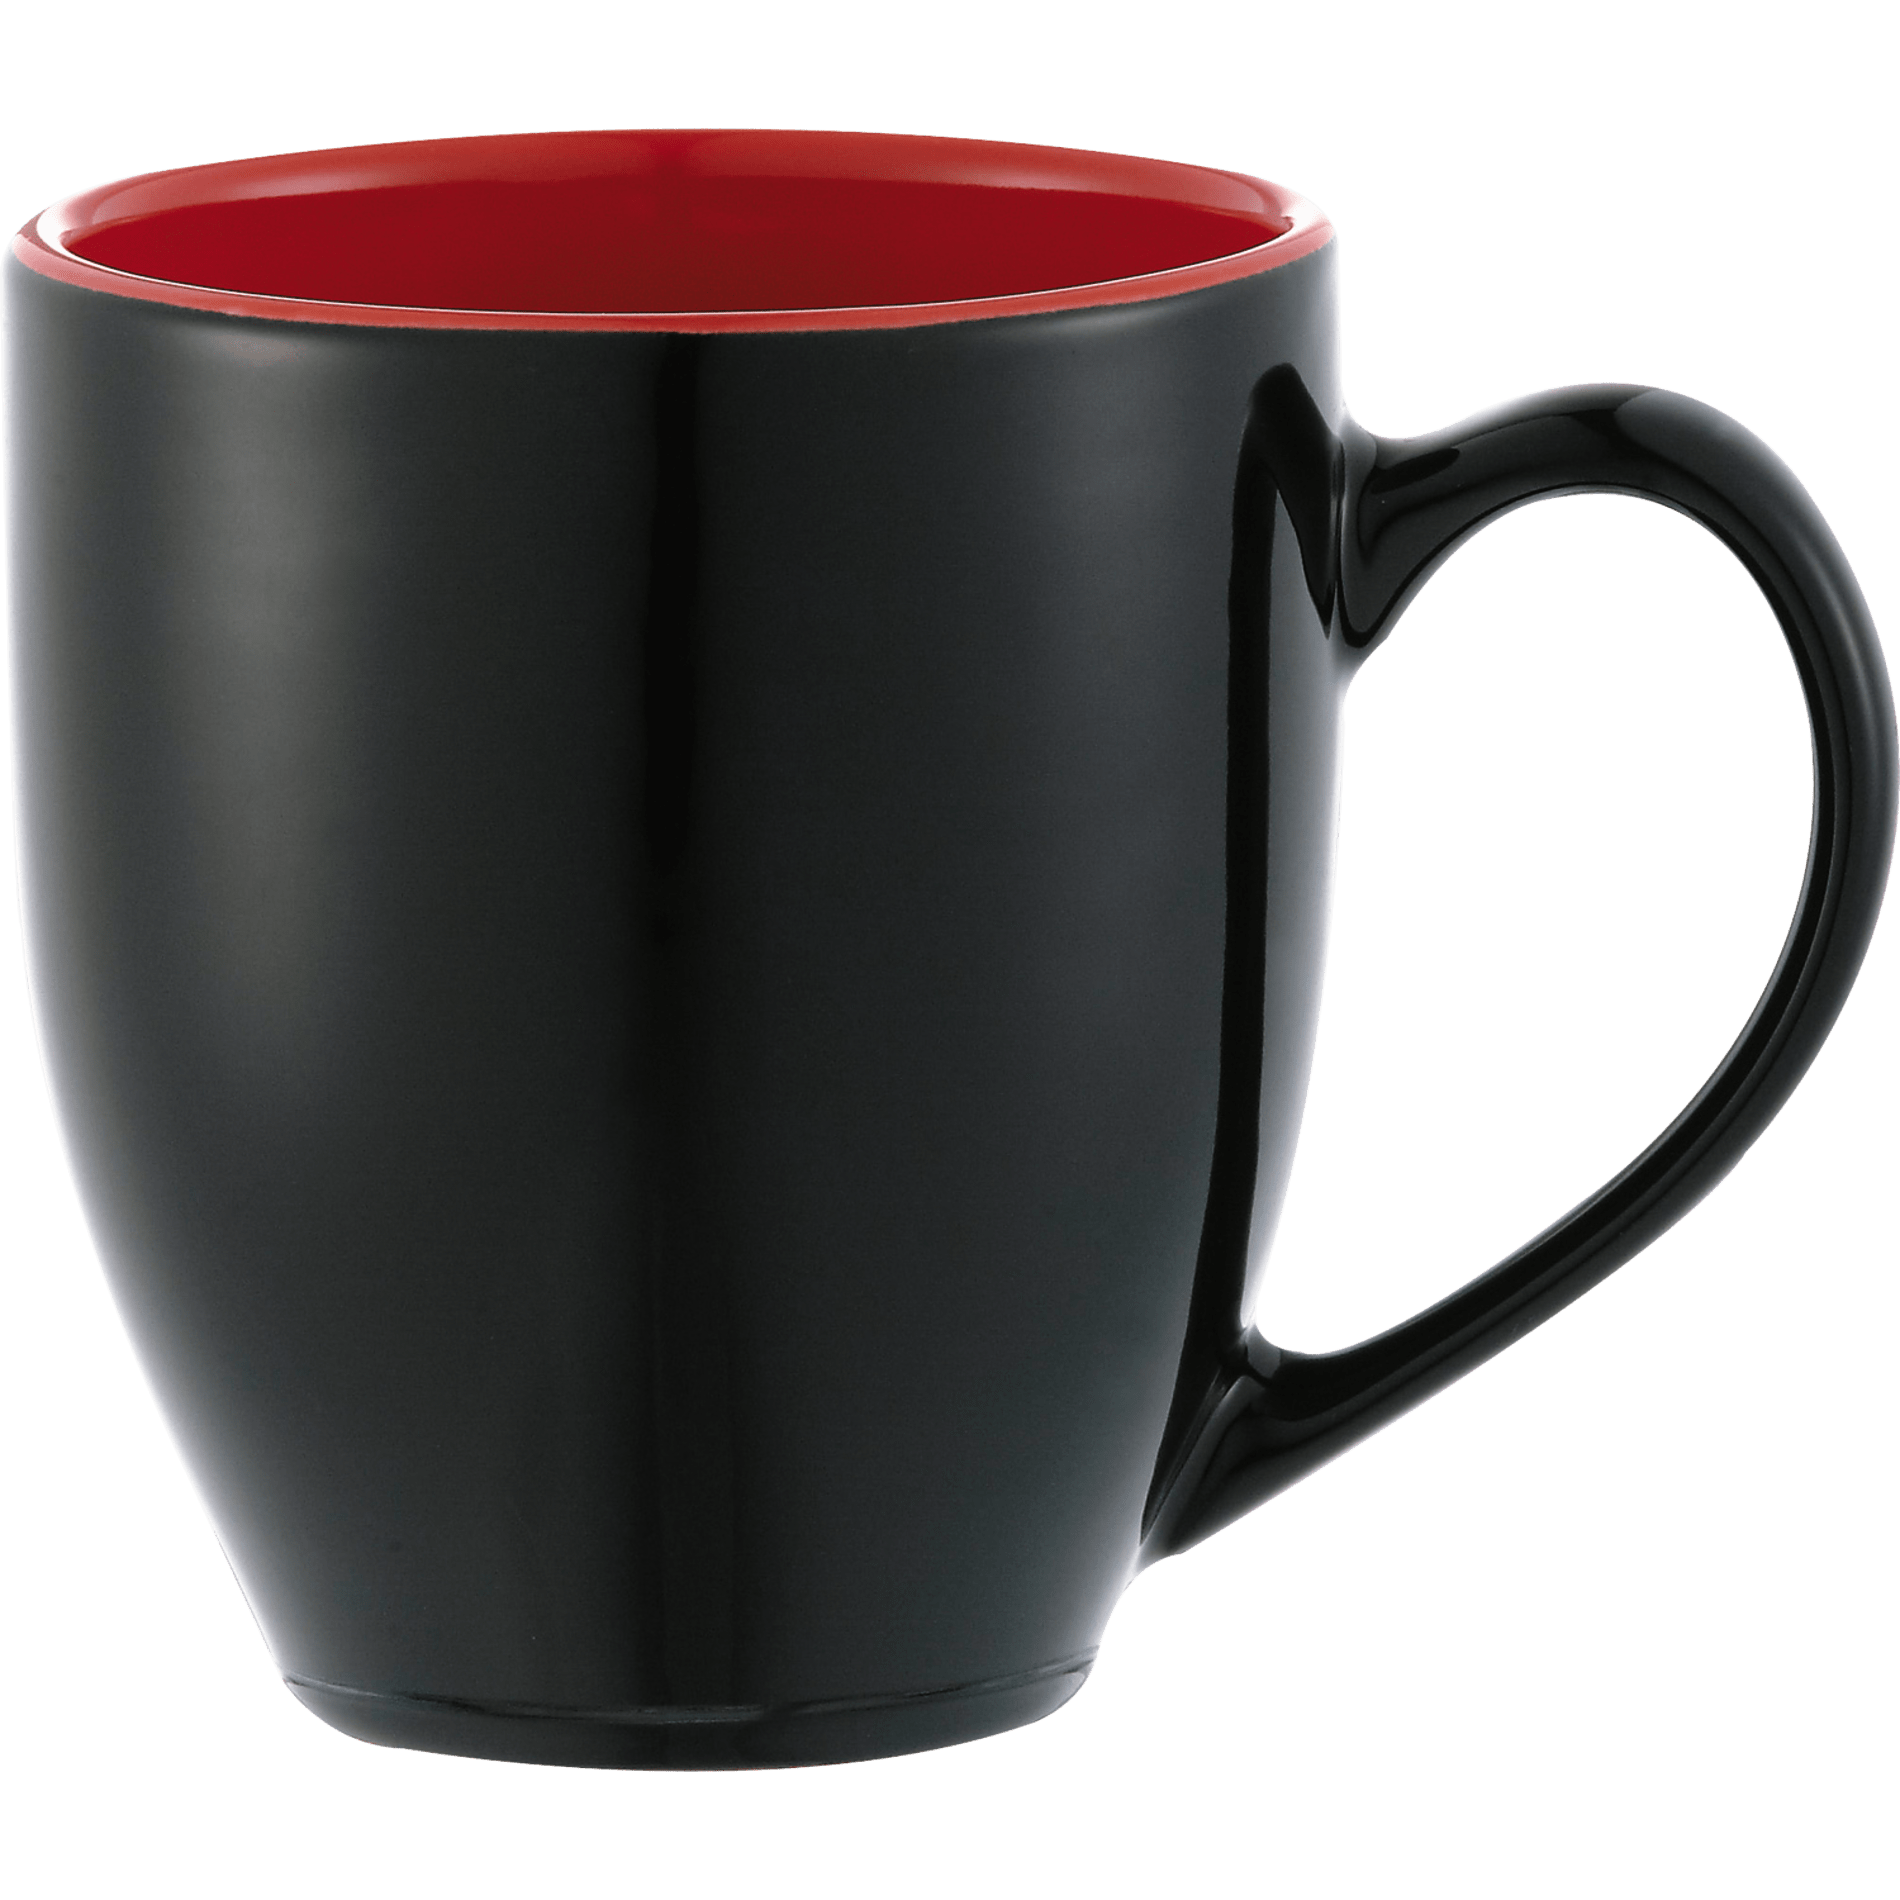 Bullet SM-6336 - Zapata 15oz Ceramic Mug  Electric